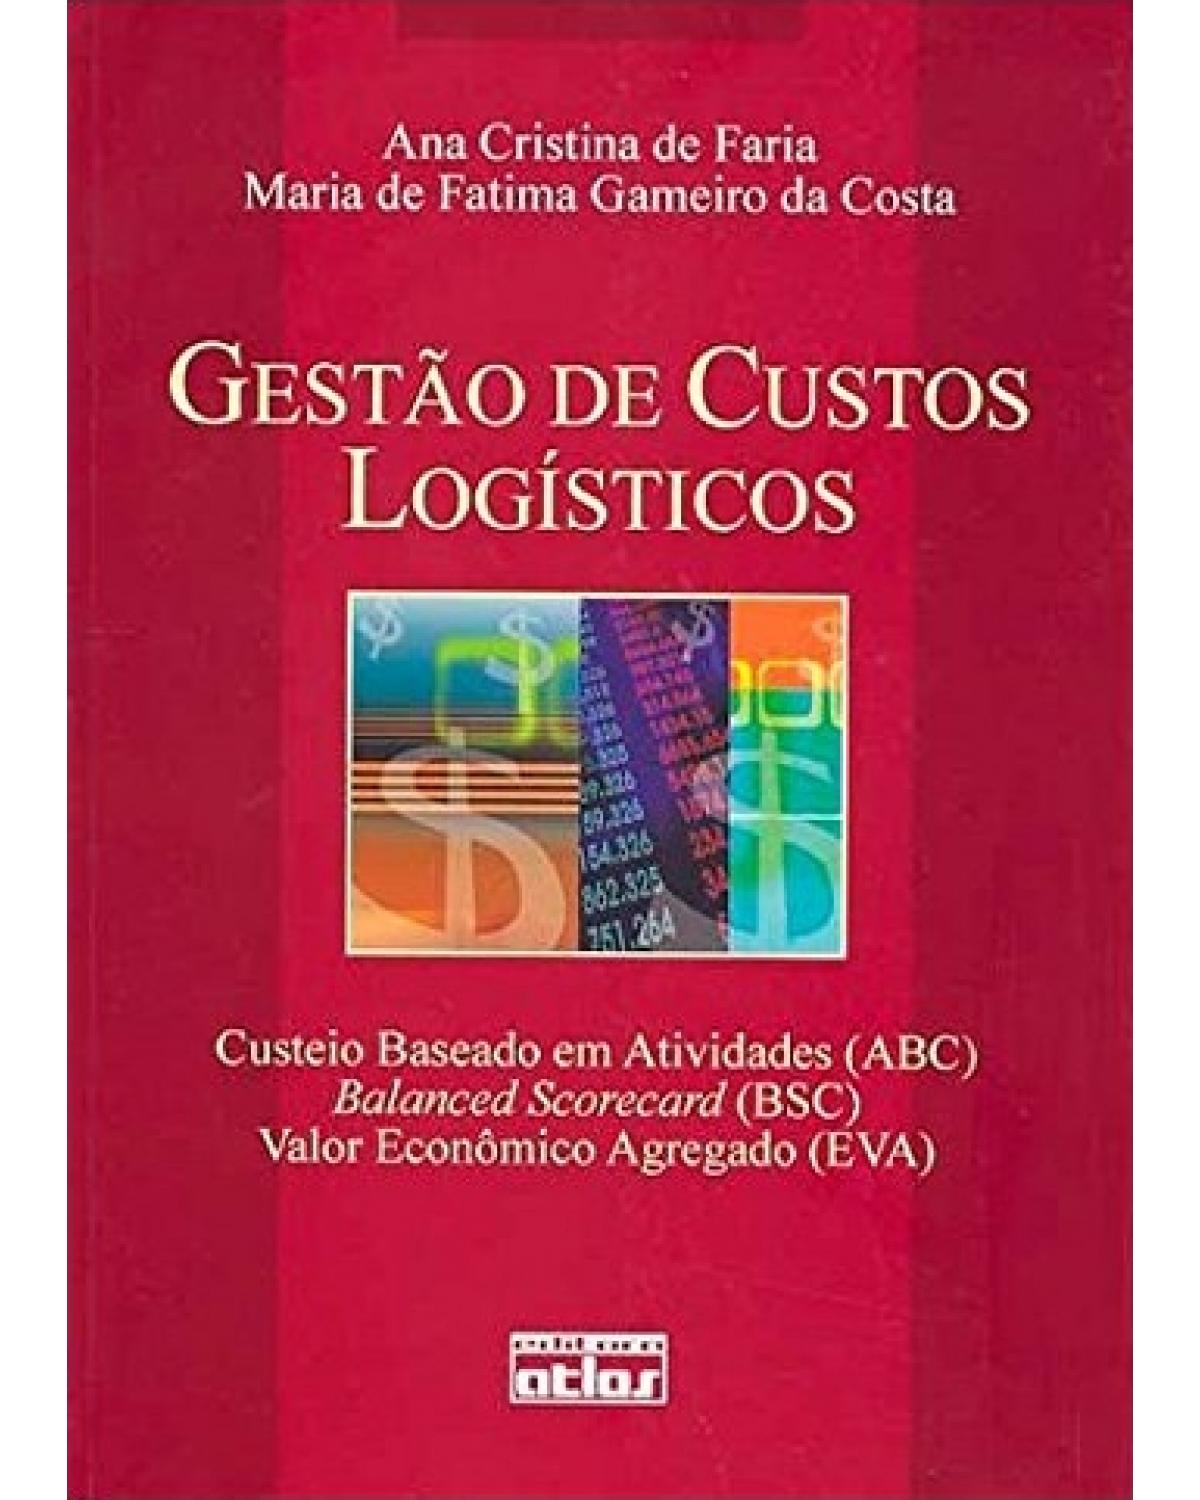 Gestão de custos logísticos - Custeio baseado em atividades (ABC), Balanced scorecard (BSC), Valor econômico agregado (EVA) - 1ª Edição | 2005